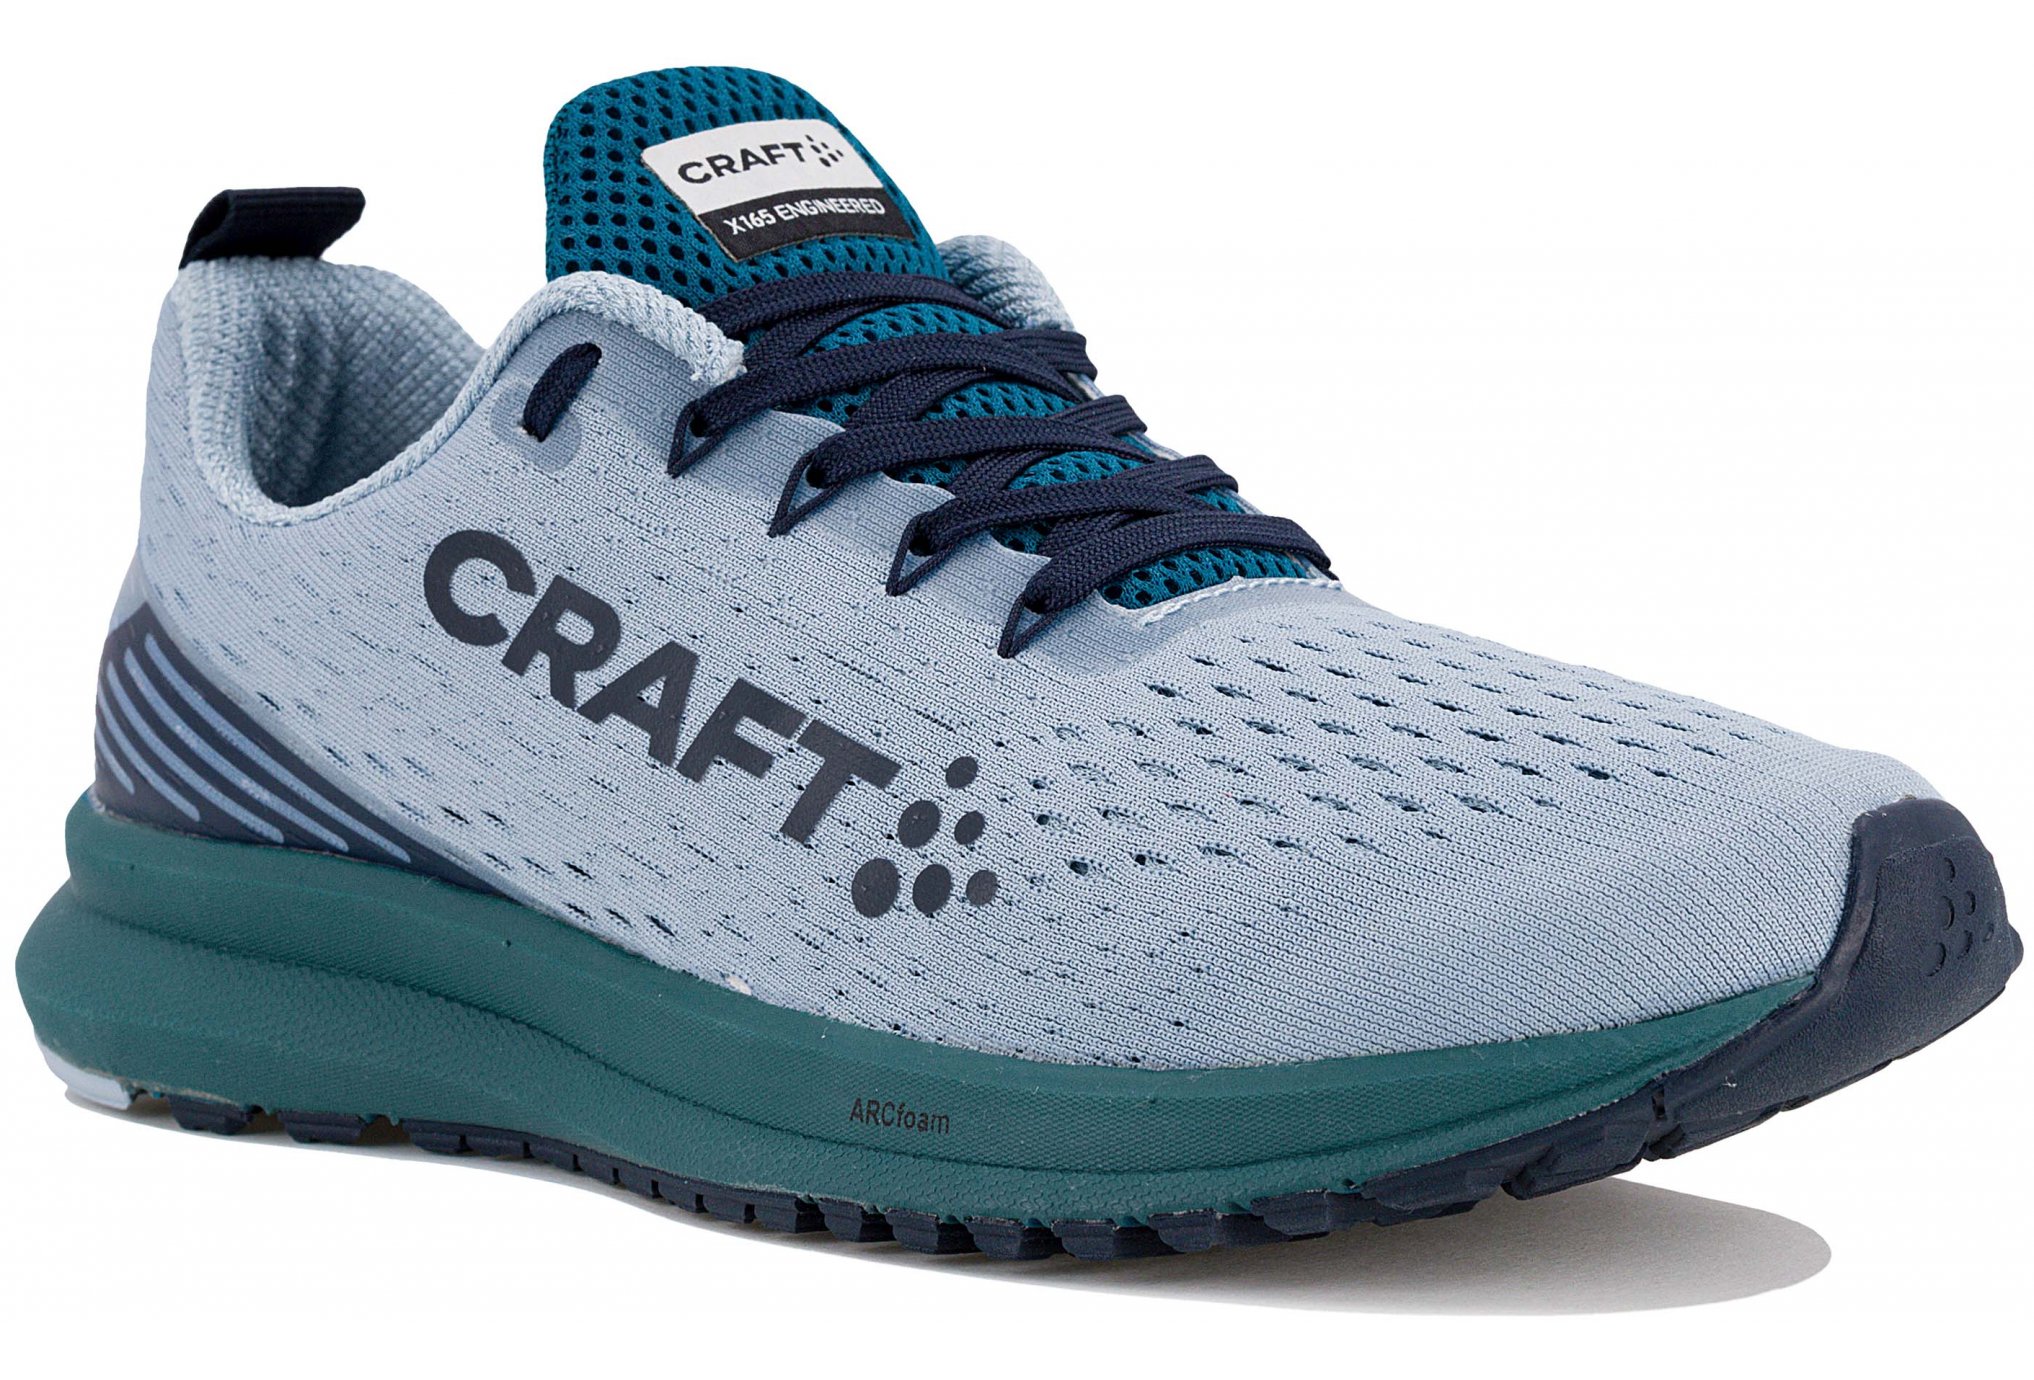 Craft X165 Engineered II W Chaussures running femme